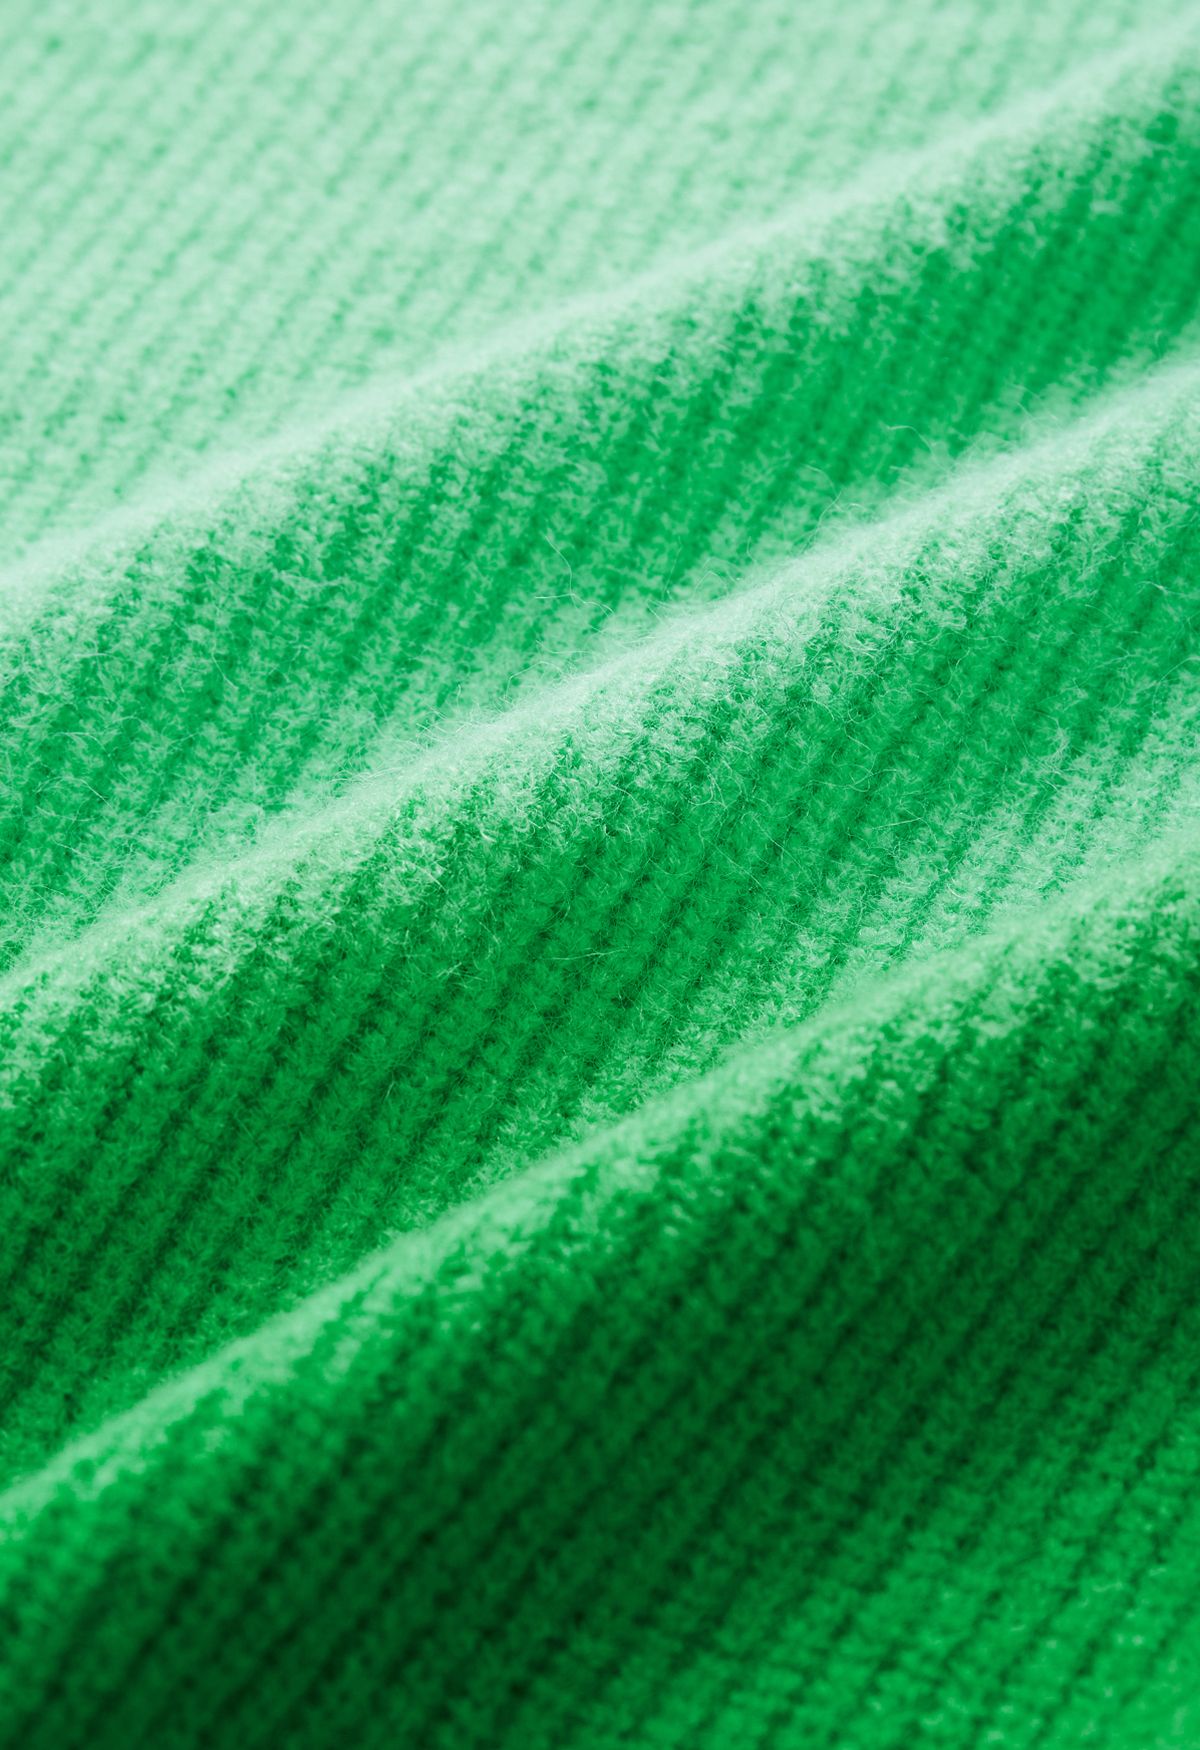 Pull en tricot côtelé à col rond ombré en vert